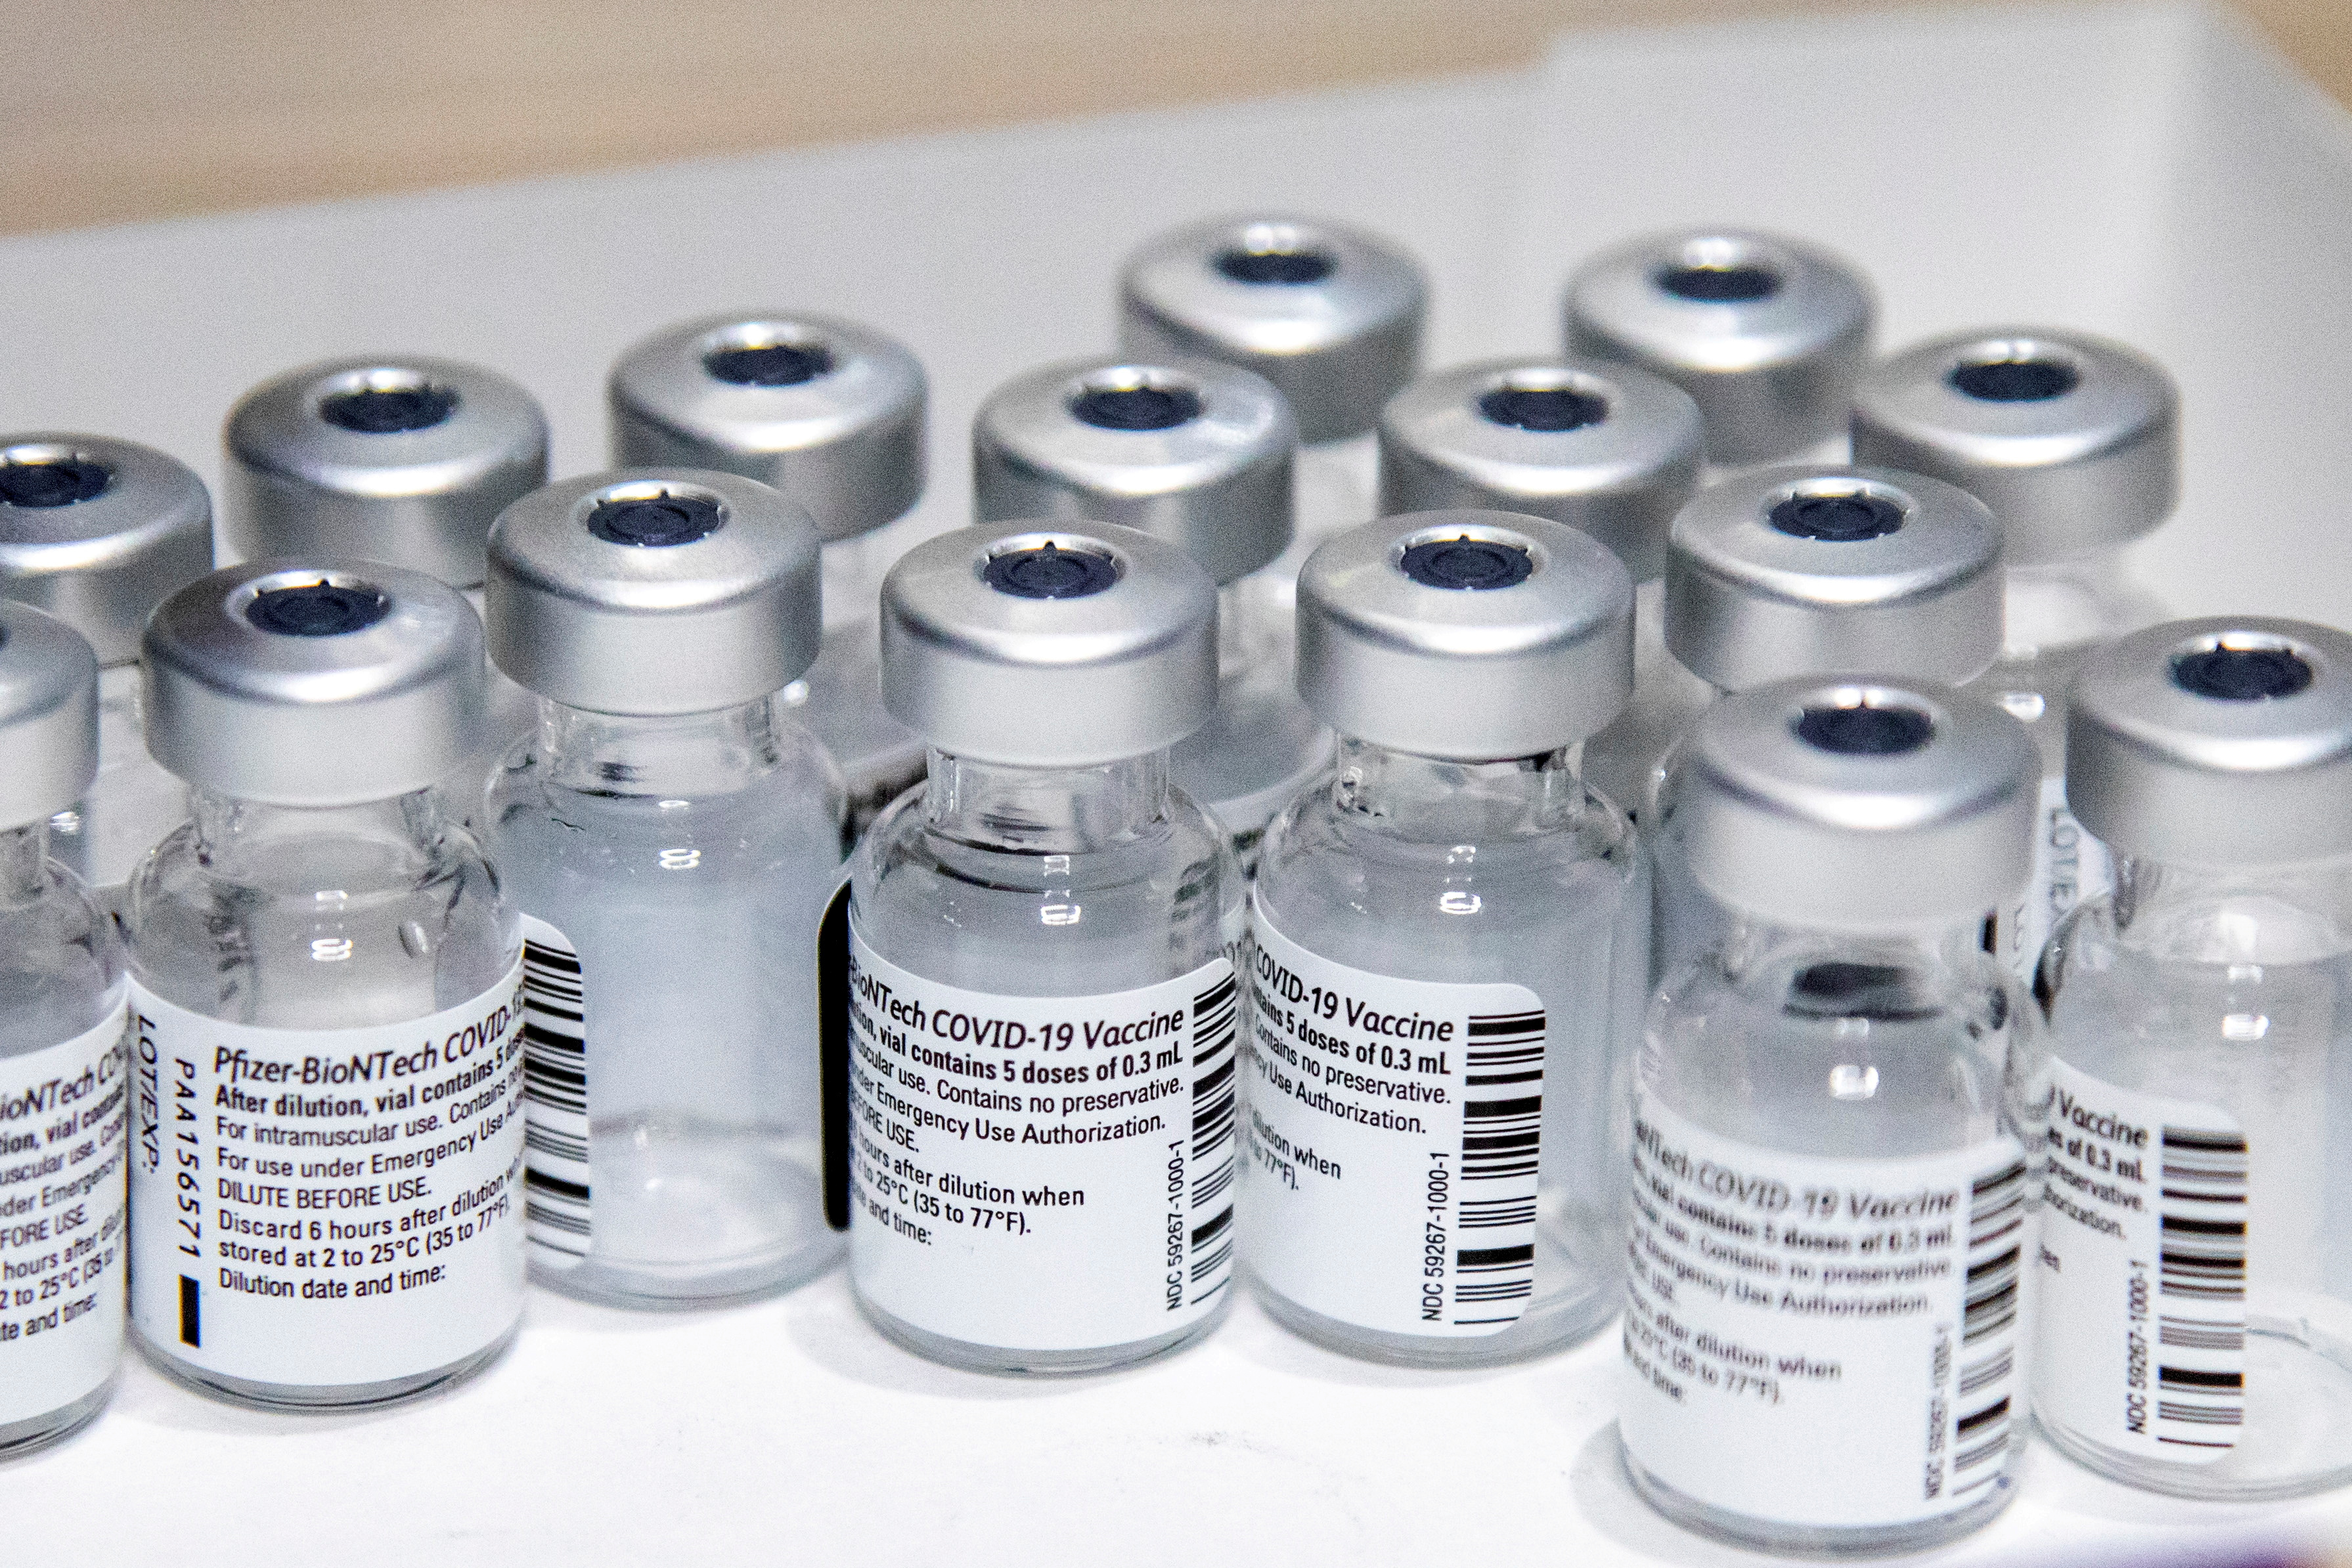 Variants: pas besoin de nouvelle formule du vaccin Pfizer/BioNTech dixit la biotech allemande